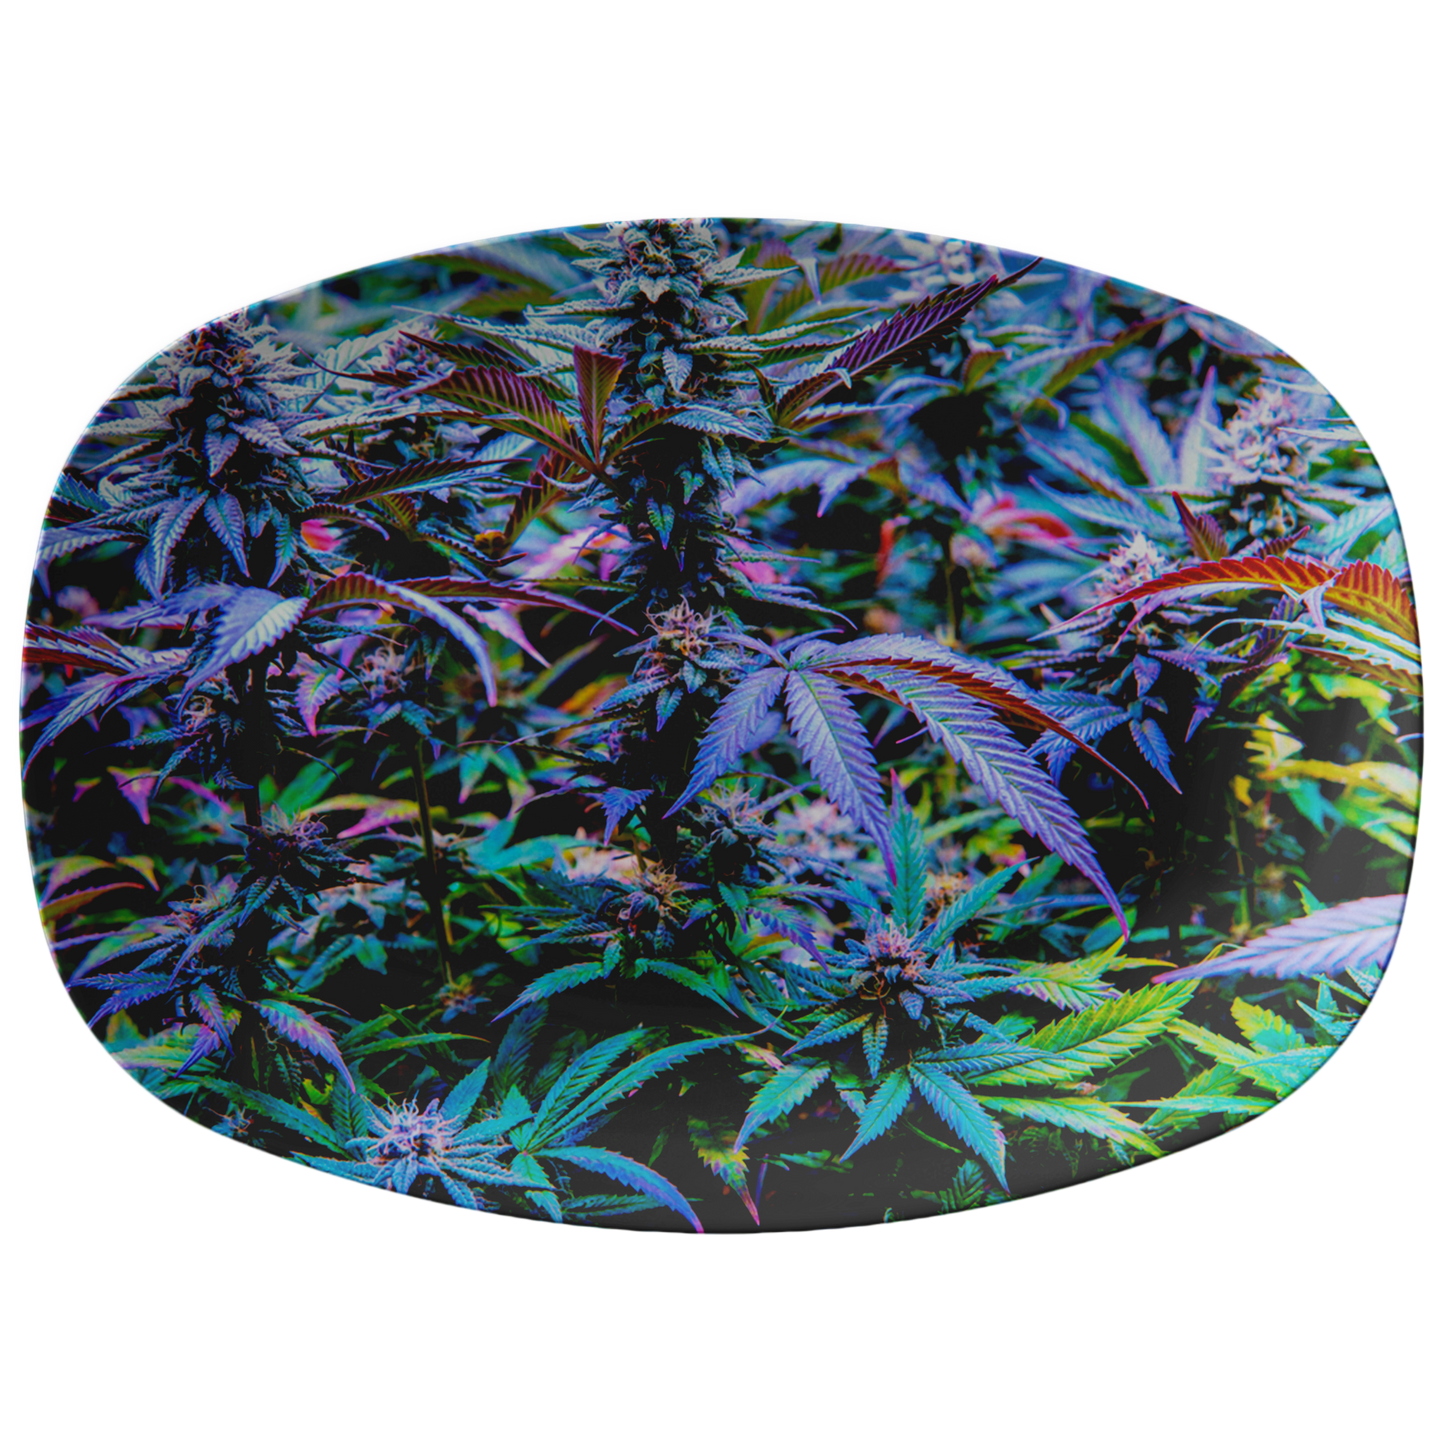 The Rainbow Cannabis Platter